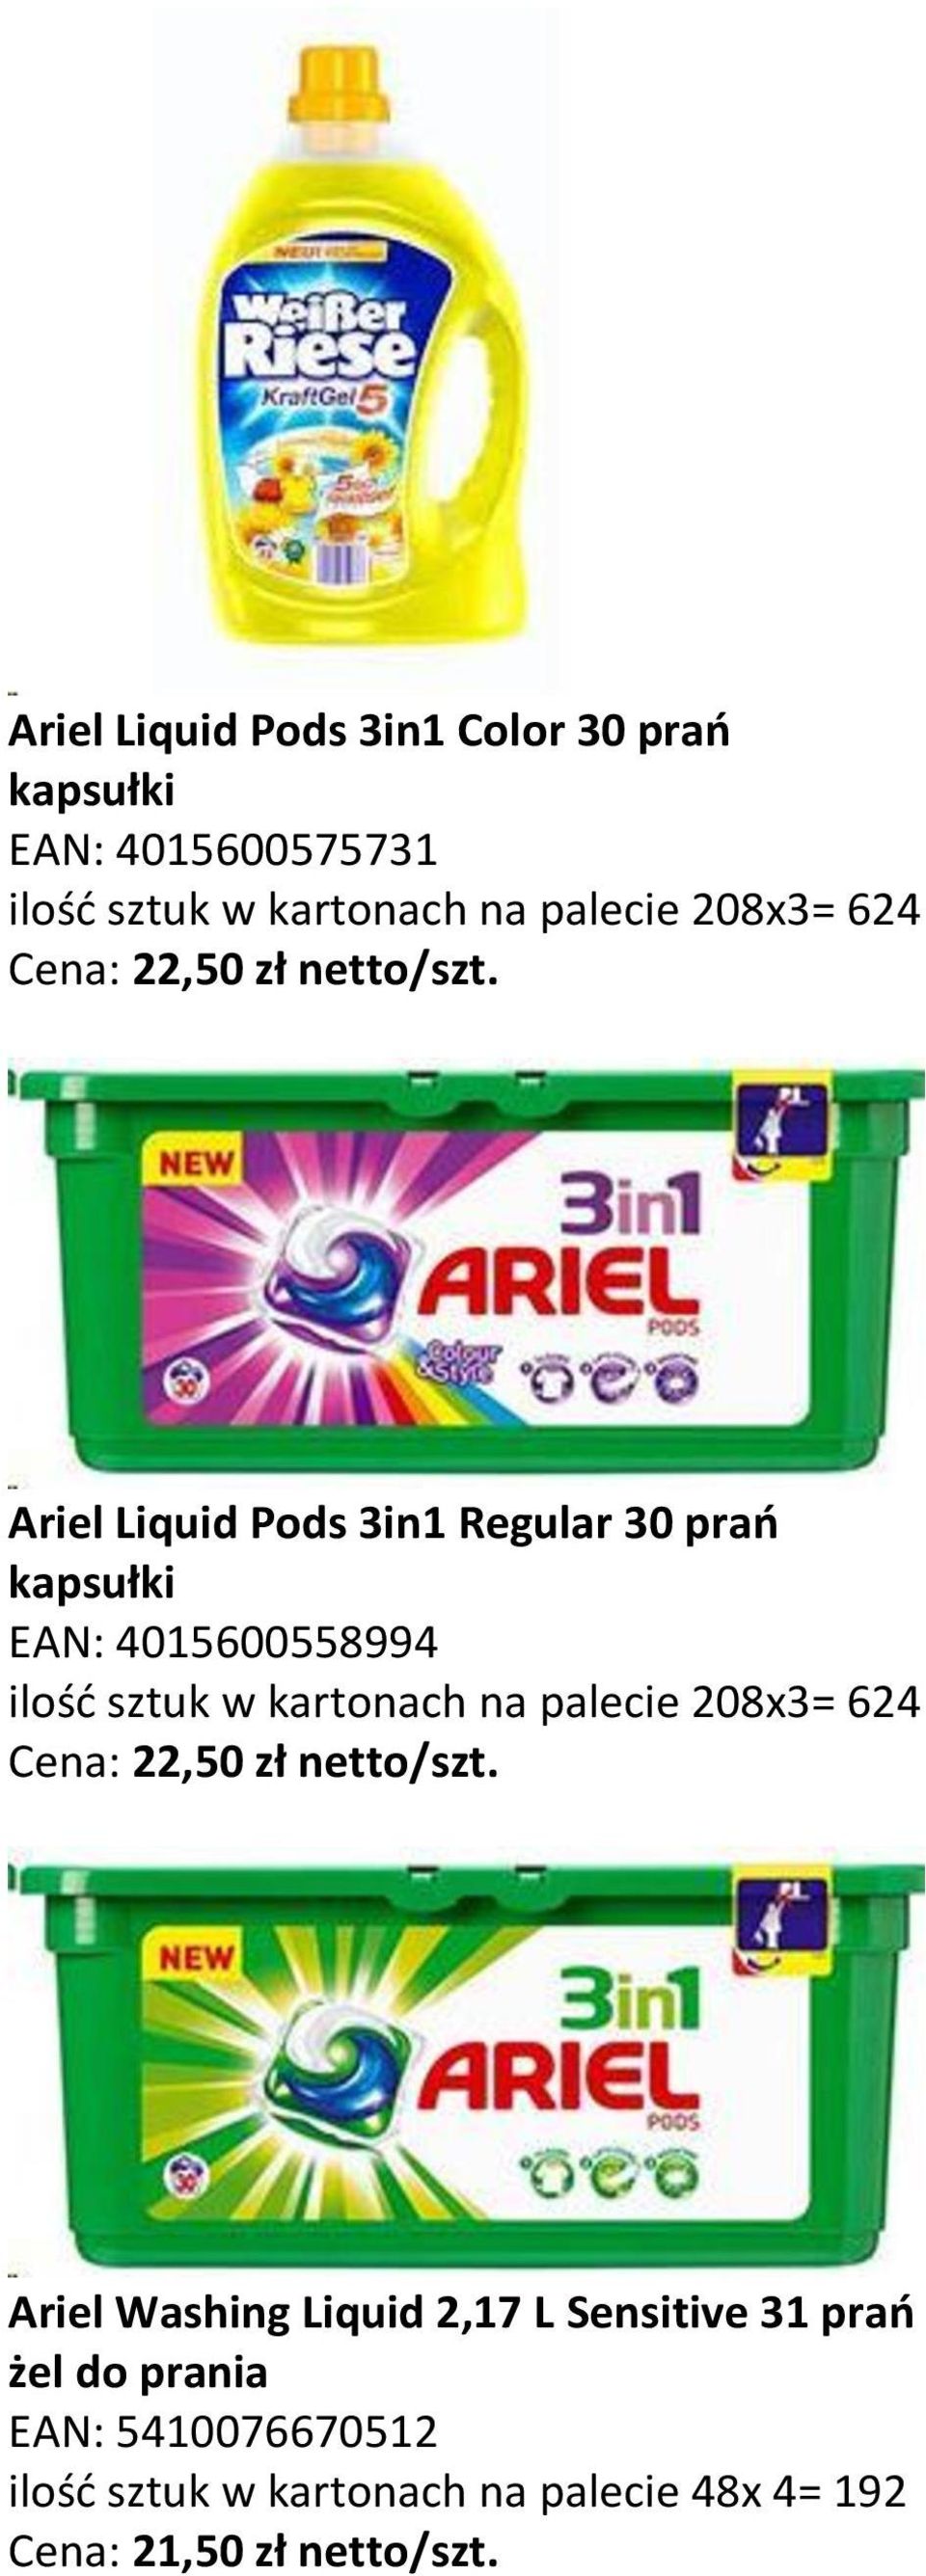 Ariel Liquid Pods 3in1 Regular 30 prań kapsułki EAN: 4015600558994 ilość sztuk w kartonach na palecie